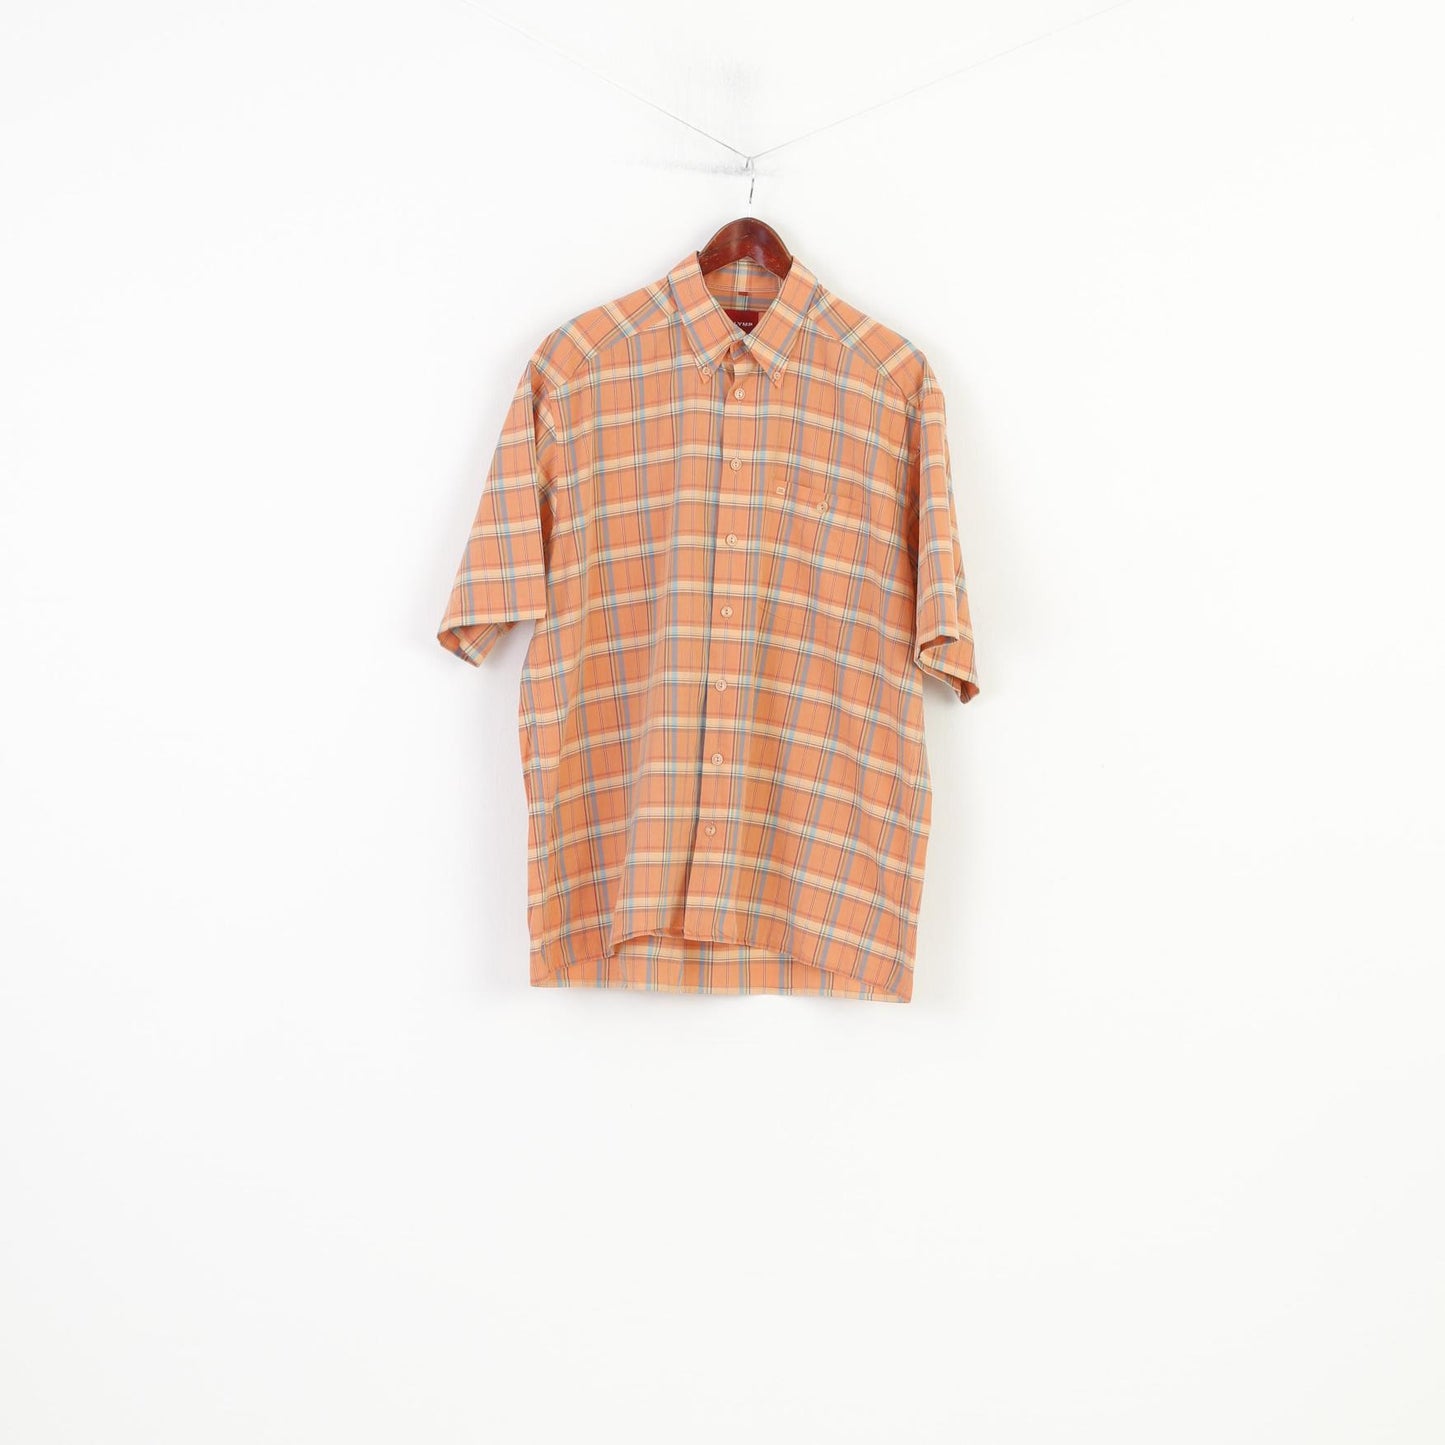 Olymp Men L Casual Shirt Short Sleeve Orange Buttons D Collar Checkered Novum Cotton